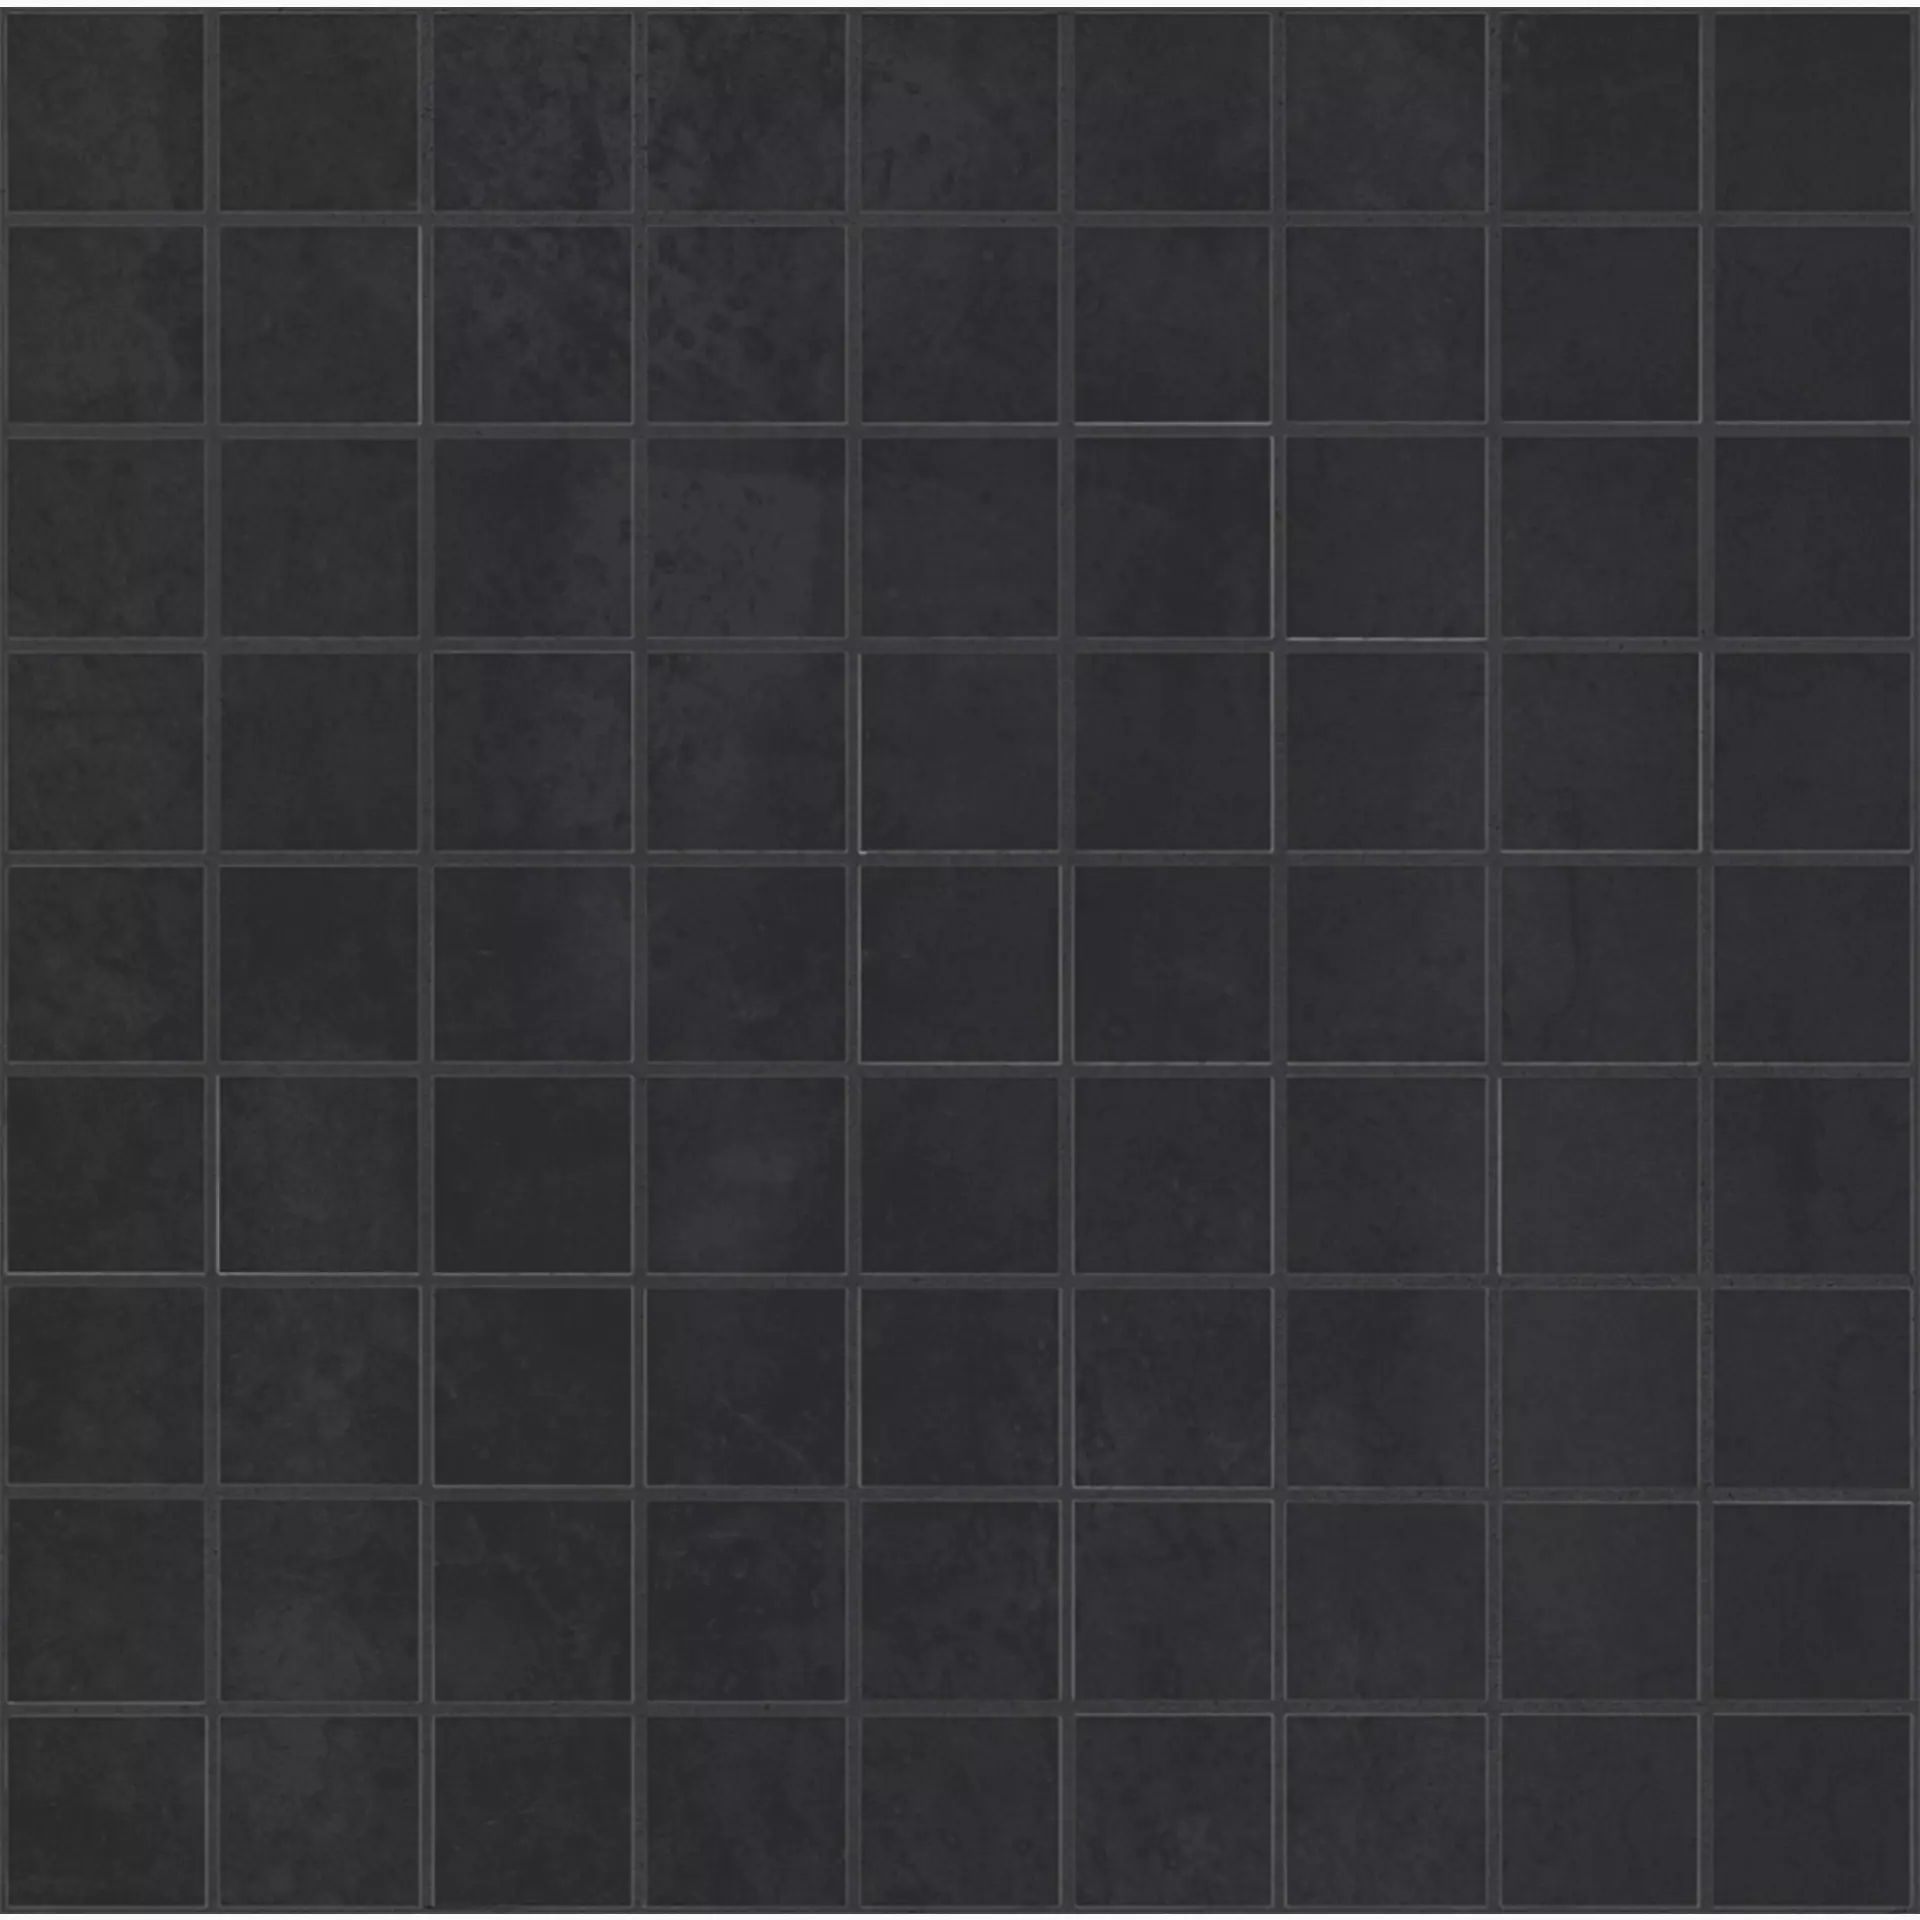 Bodenfliese,Wandfliese Marazzi Mineral Black Naturale – Matt Black M0MR matt natur 37,5x37,5cm Mosaik 10mm